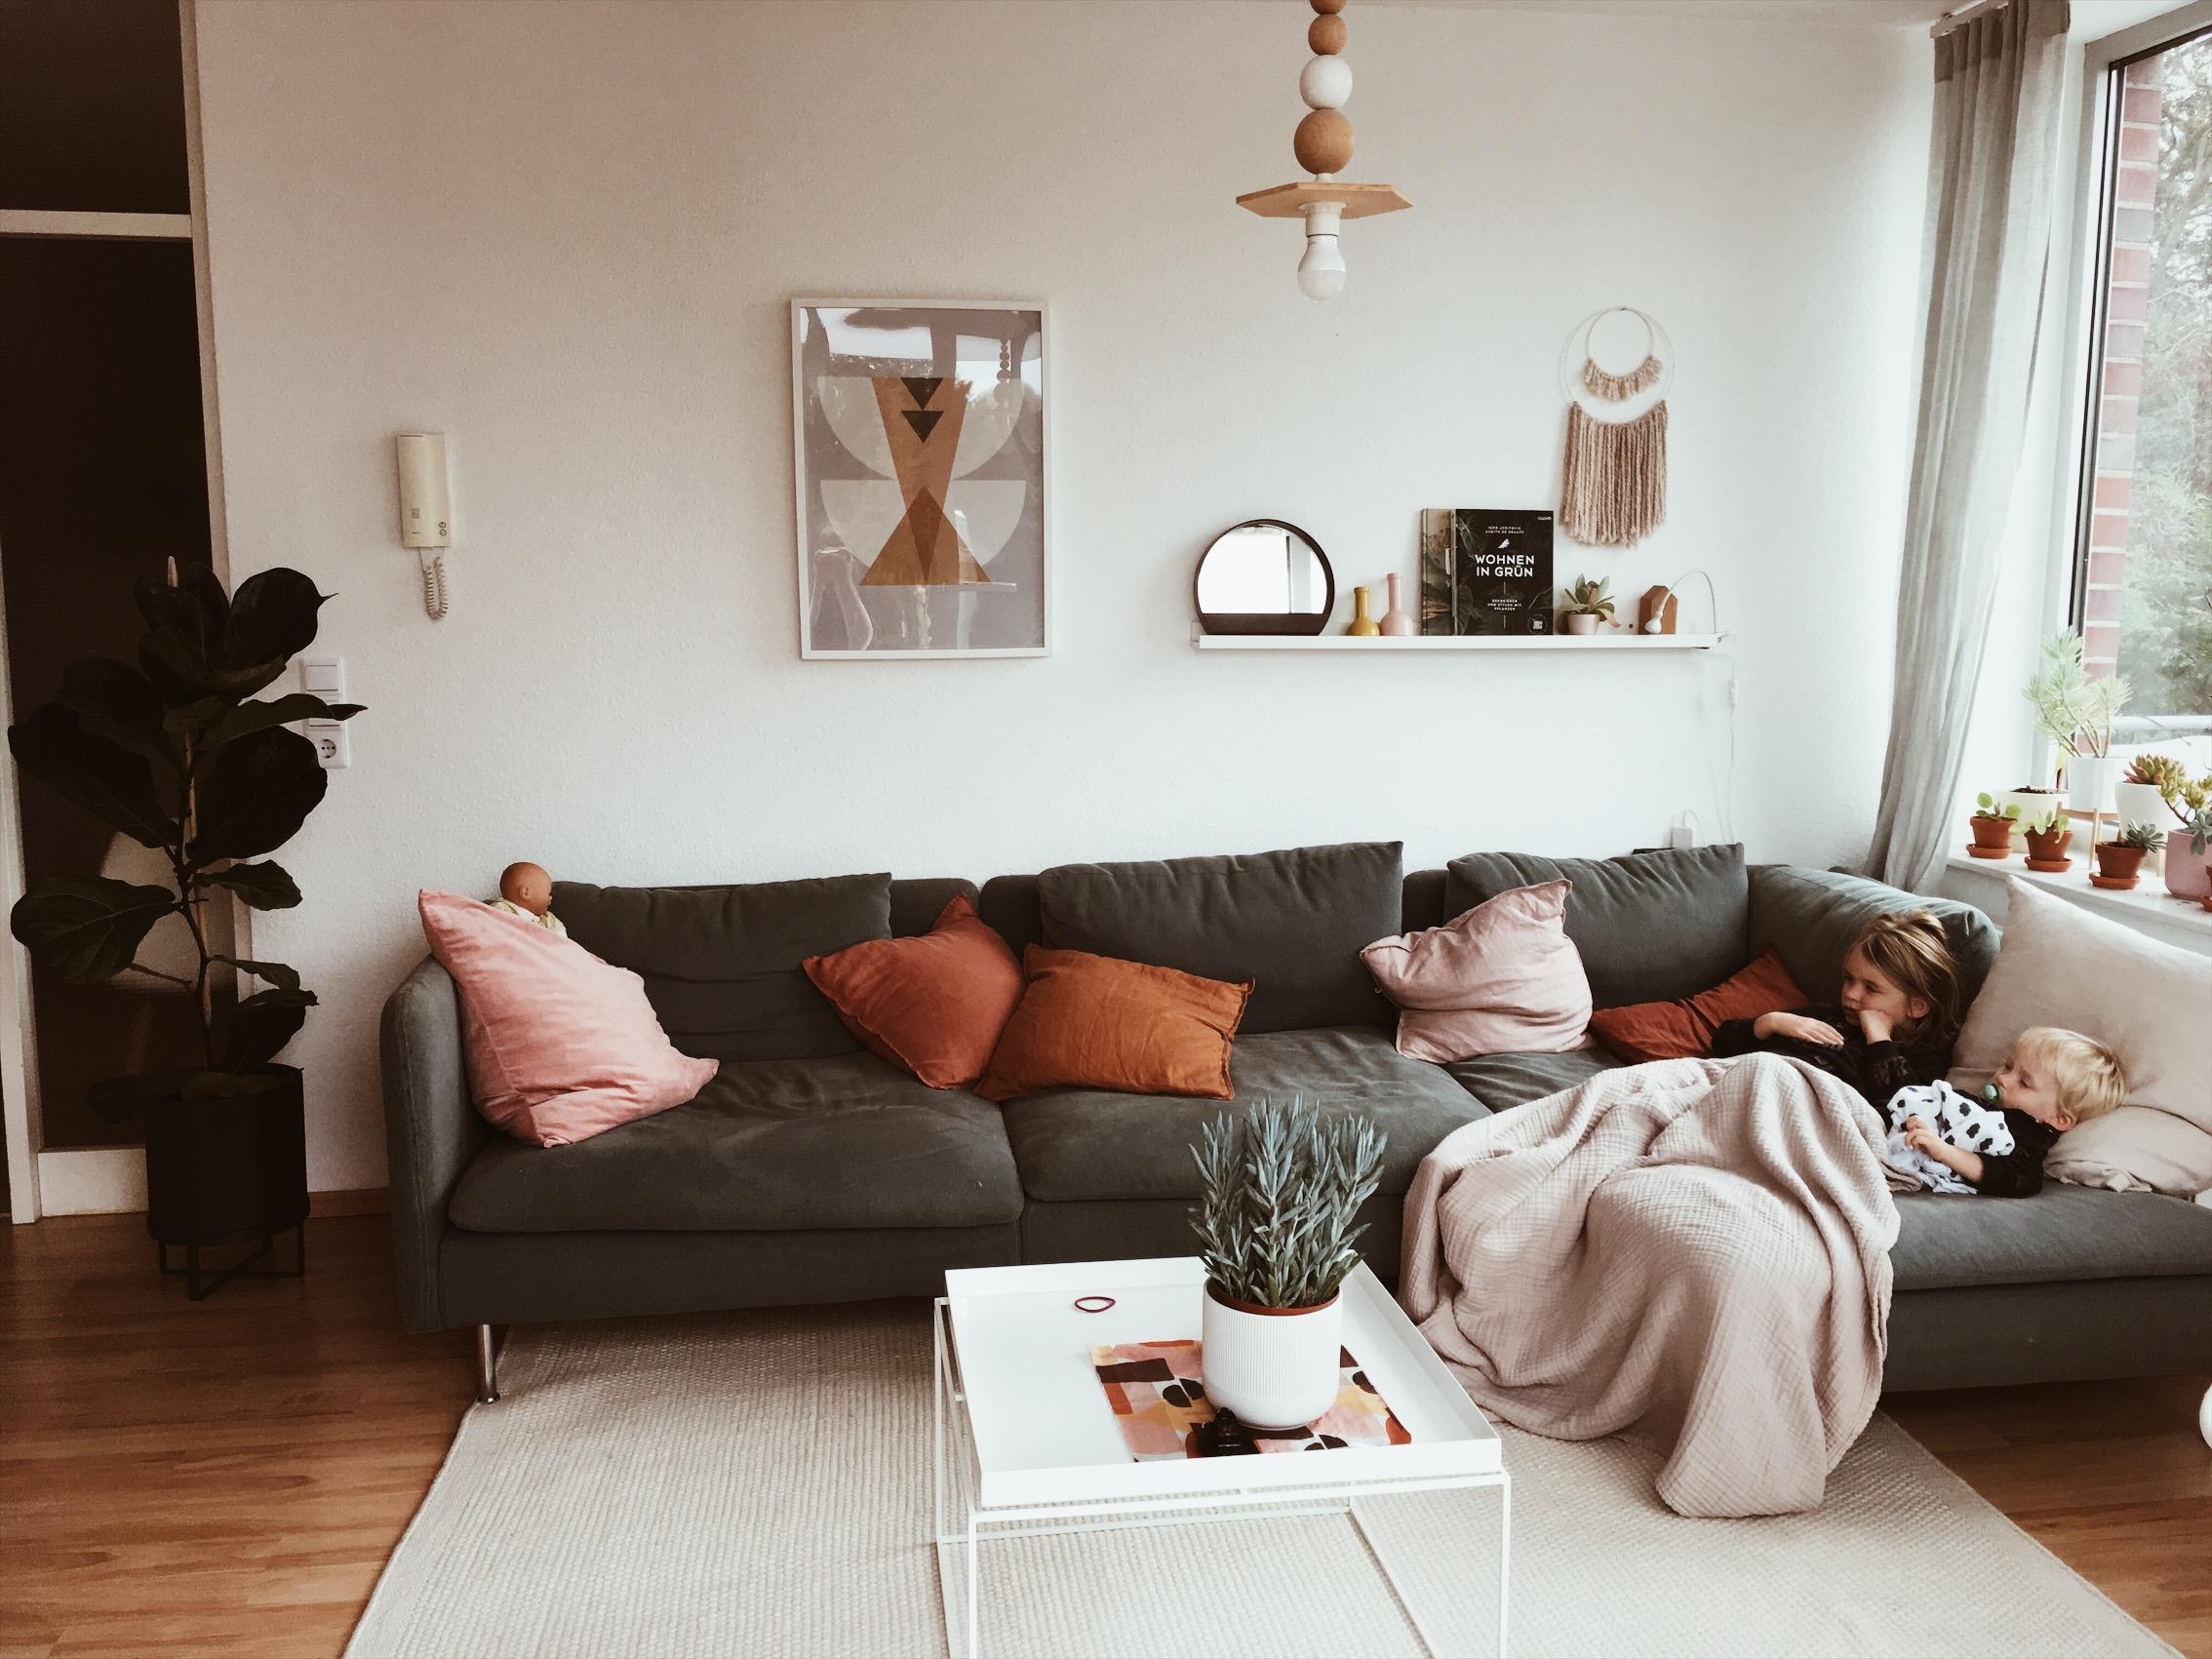 FAULENZEN.

#livingroom #wohnzimmer #couch #pillows #deco #midcentury #wohnraumliebe #interior #plants #couchstyle